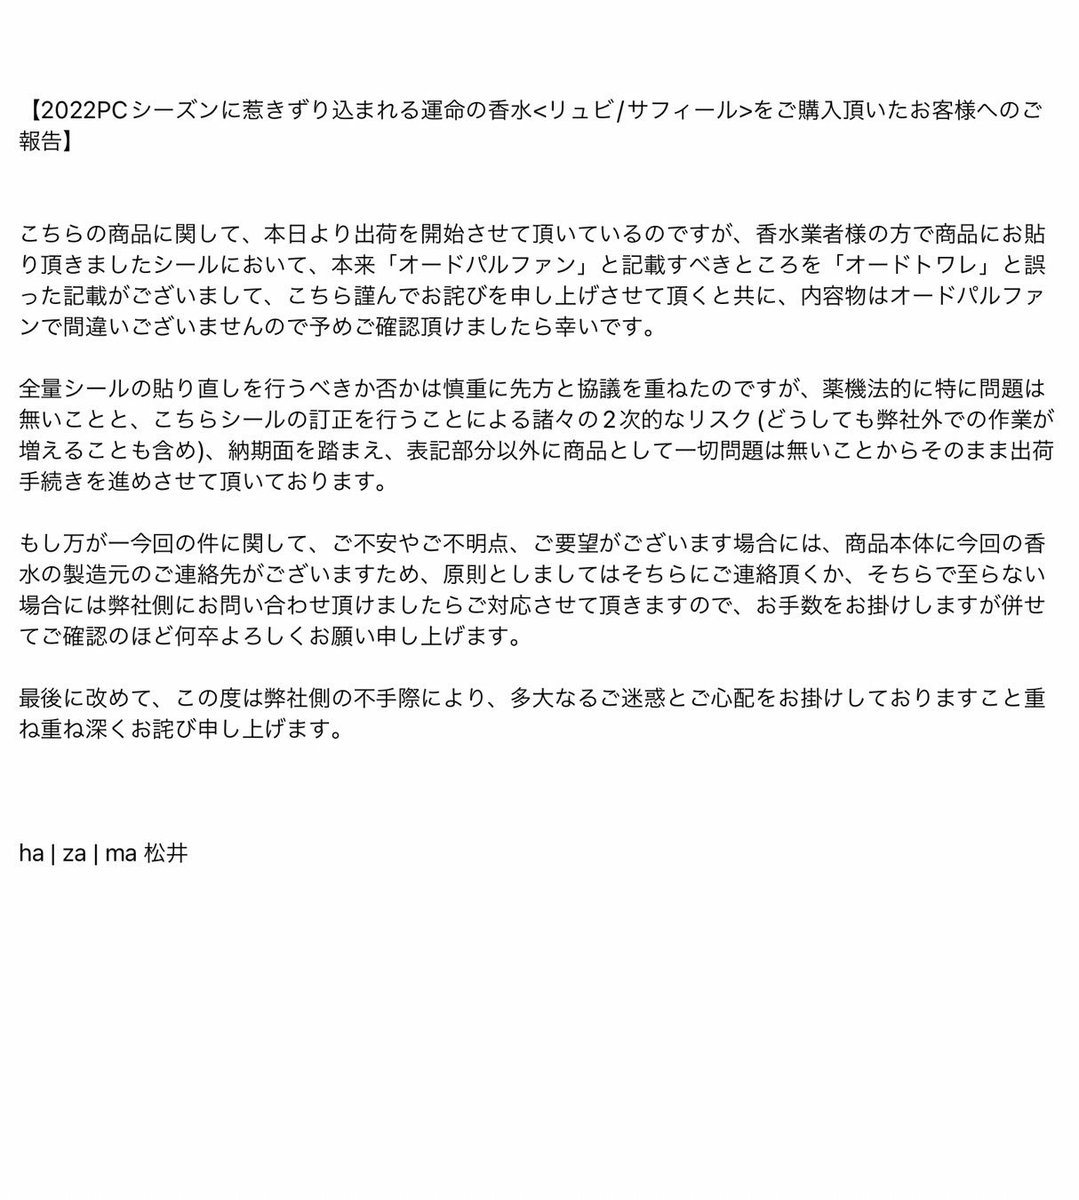 matsui ryosuke | 松井 諒祐 on Twitter: "【2022PCシーズンに惹きずり込まれる運命の香水 をご購入頂いたお客